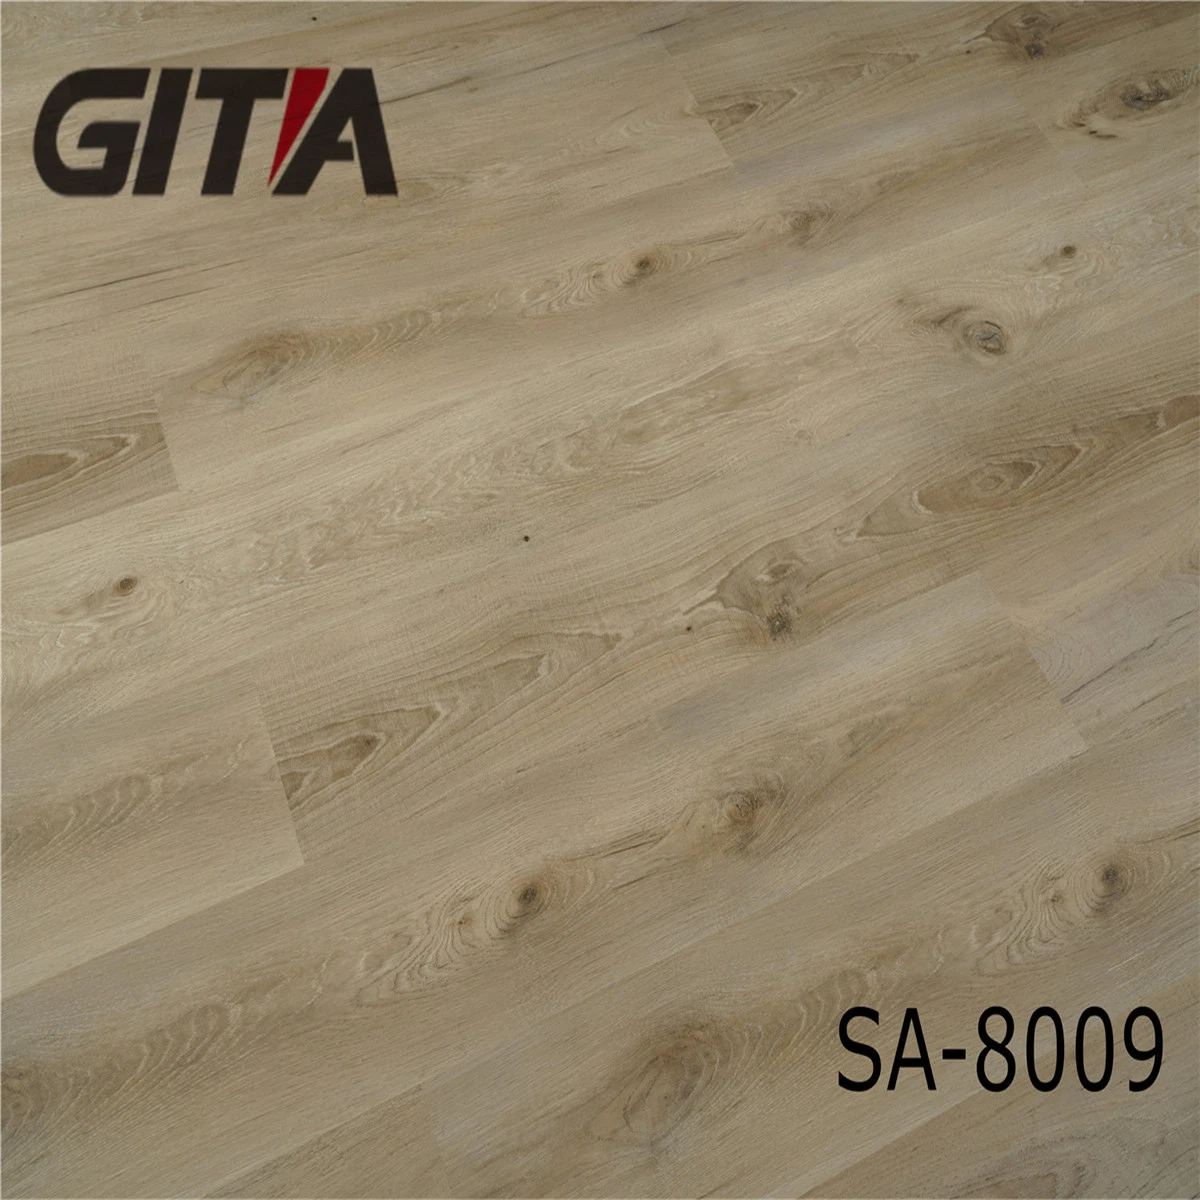 Comercial Gitia usar 4mm, de fácil limpieza de suelos de vinilo Plank Spc haga clic en